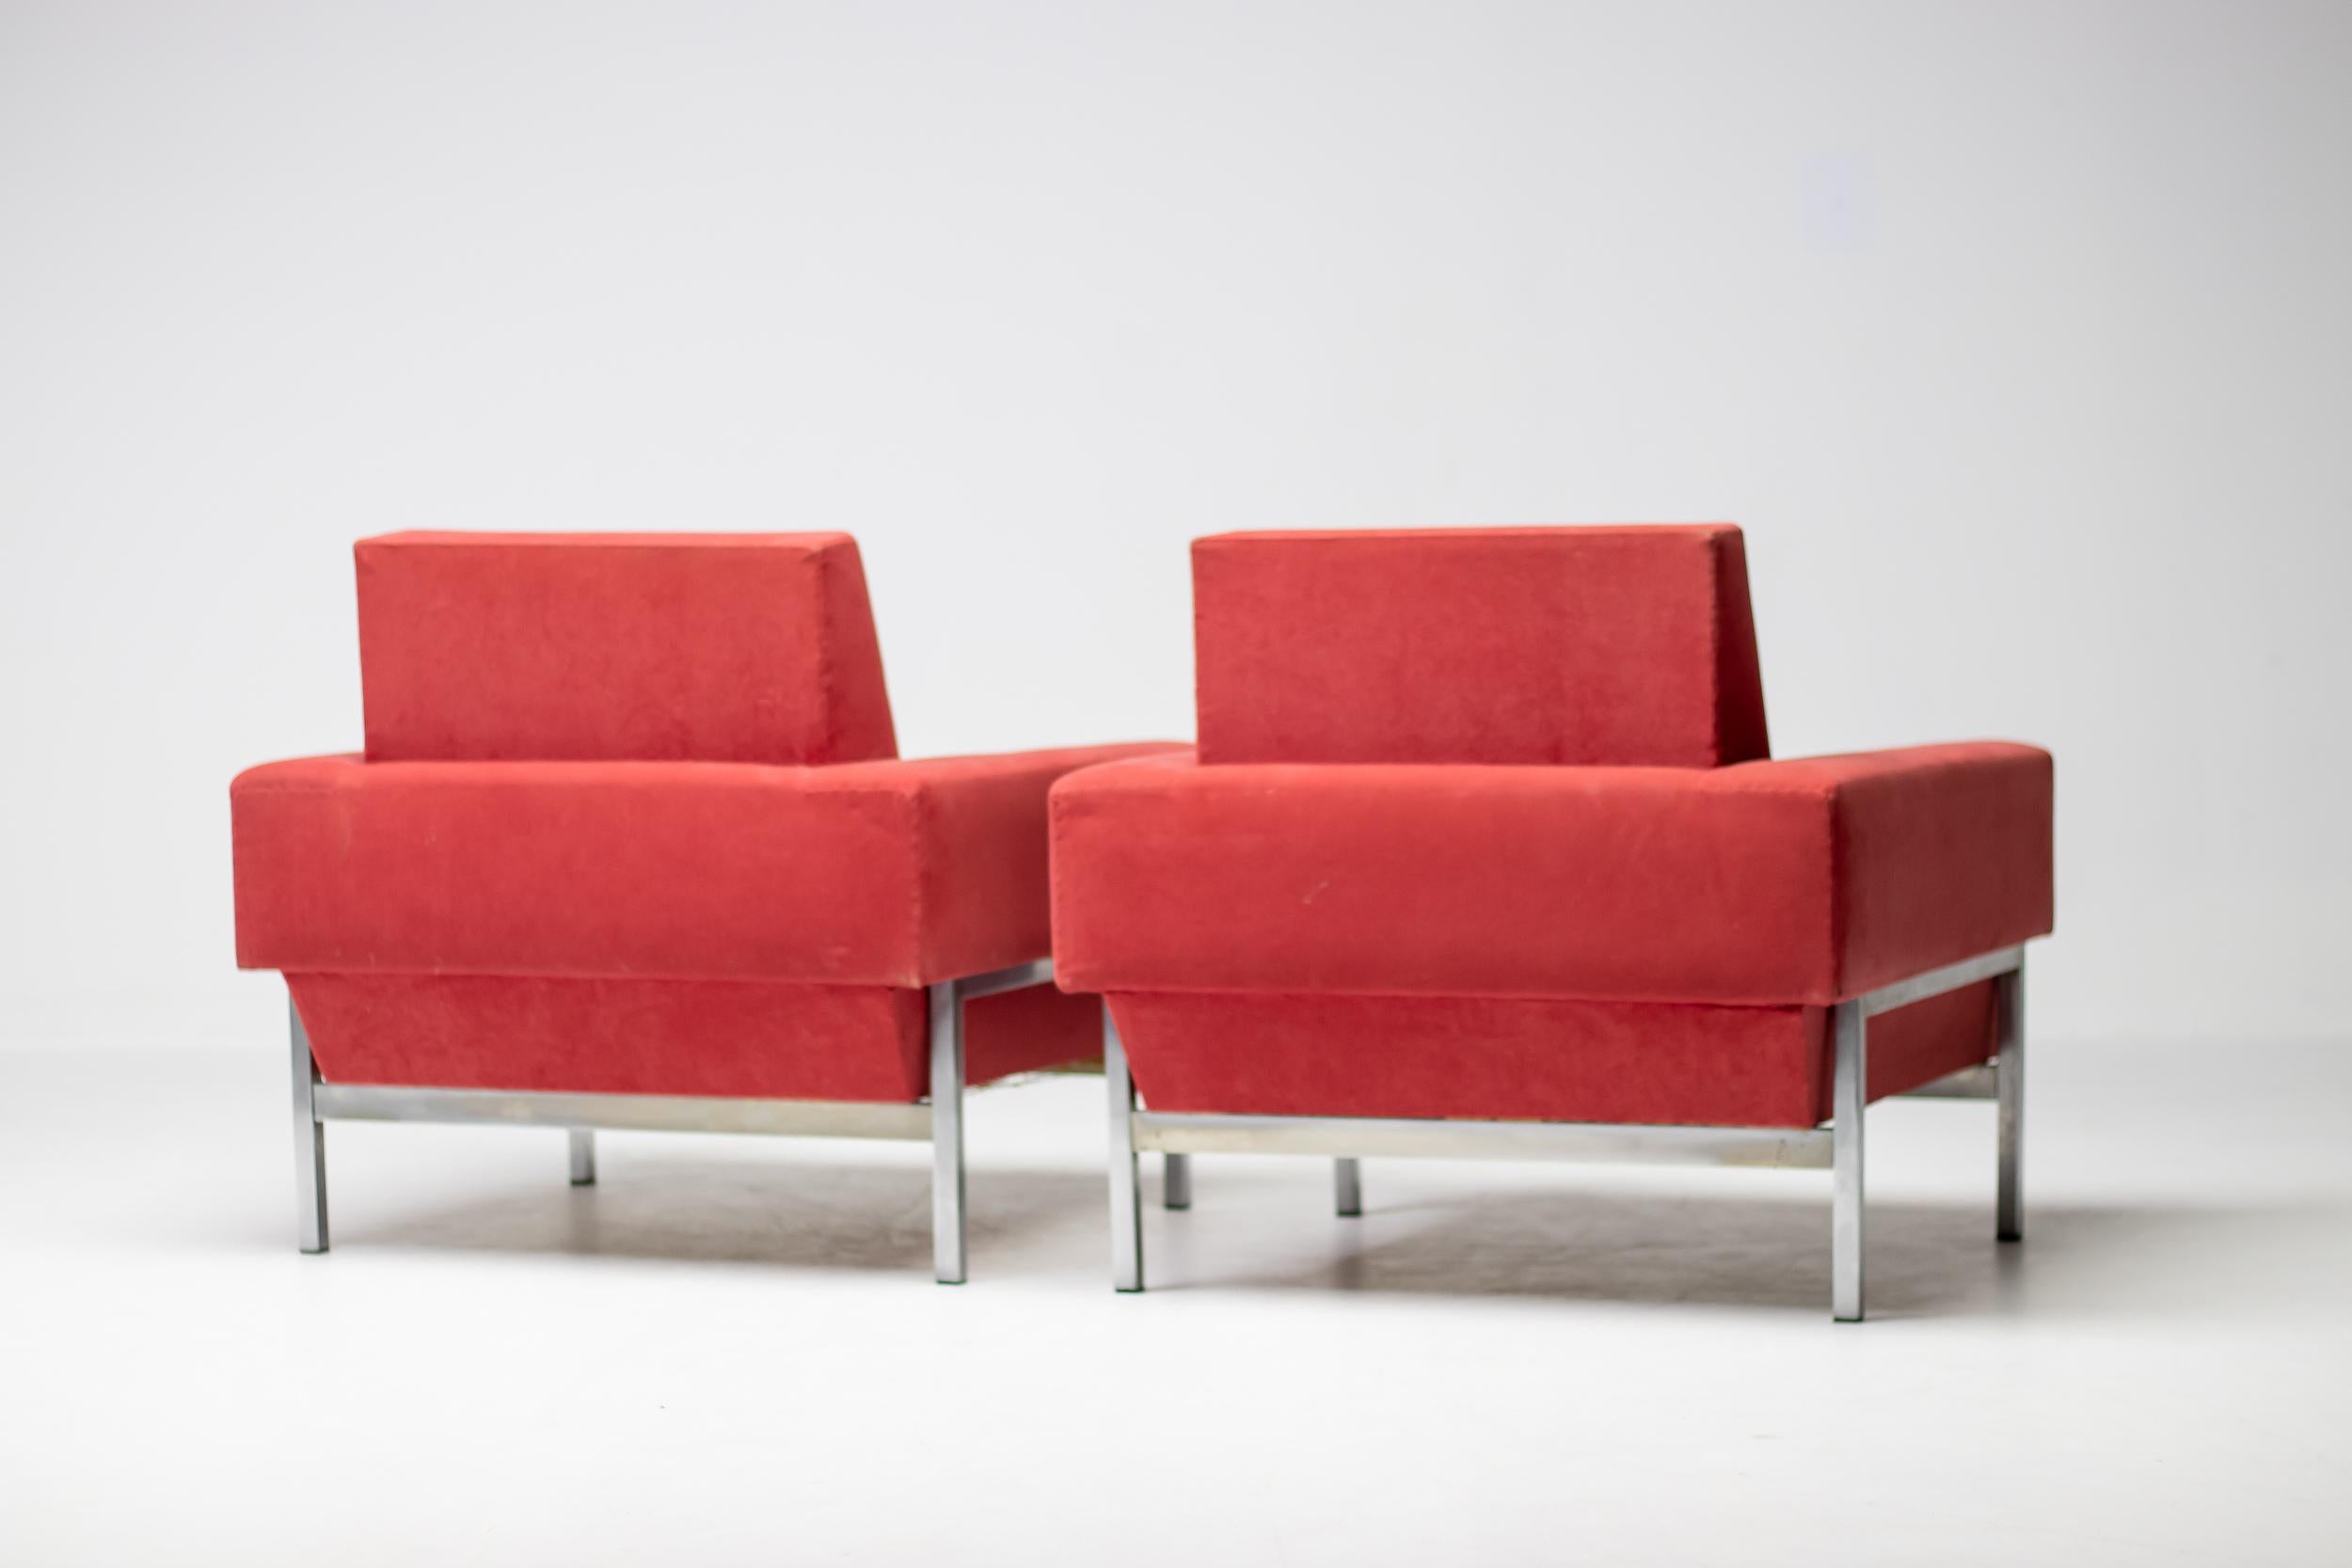 Fauteuils club CIRCA en tissu Alcantara rouge, fabriqués en Italie vers 1960 par Saporiti. 
Ces chaises, dotées d'une structure en acier chromé, présentent un dossier incliné très caractéristique au niveau du bas. 
La structure chromée forme un